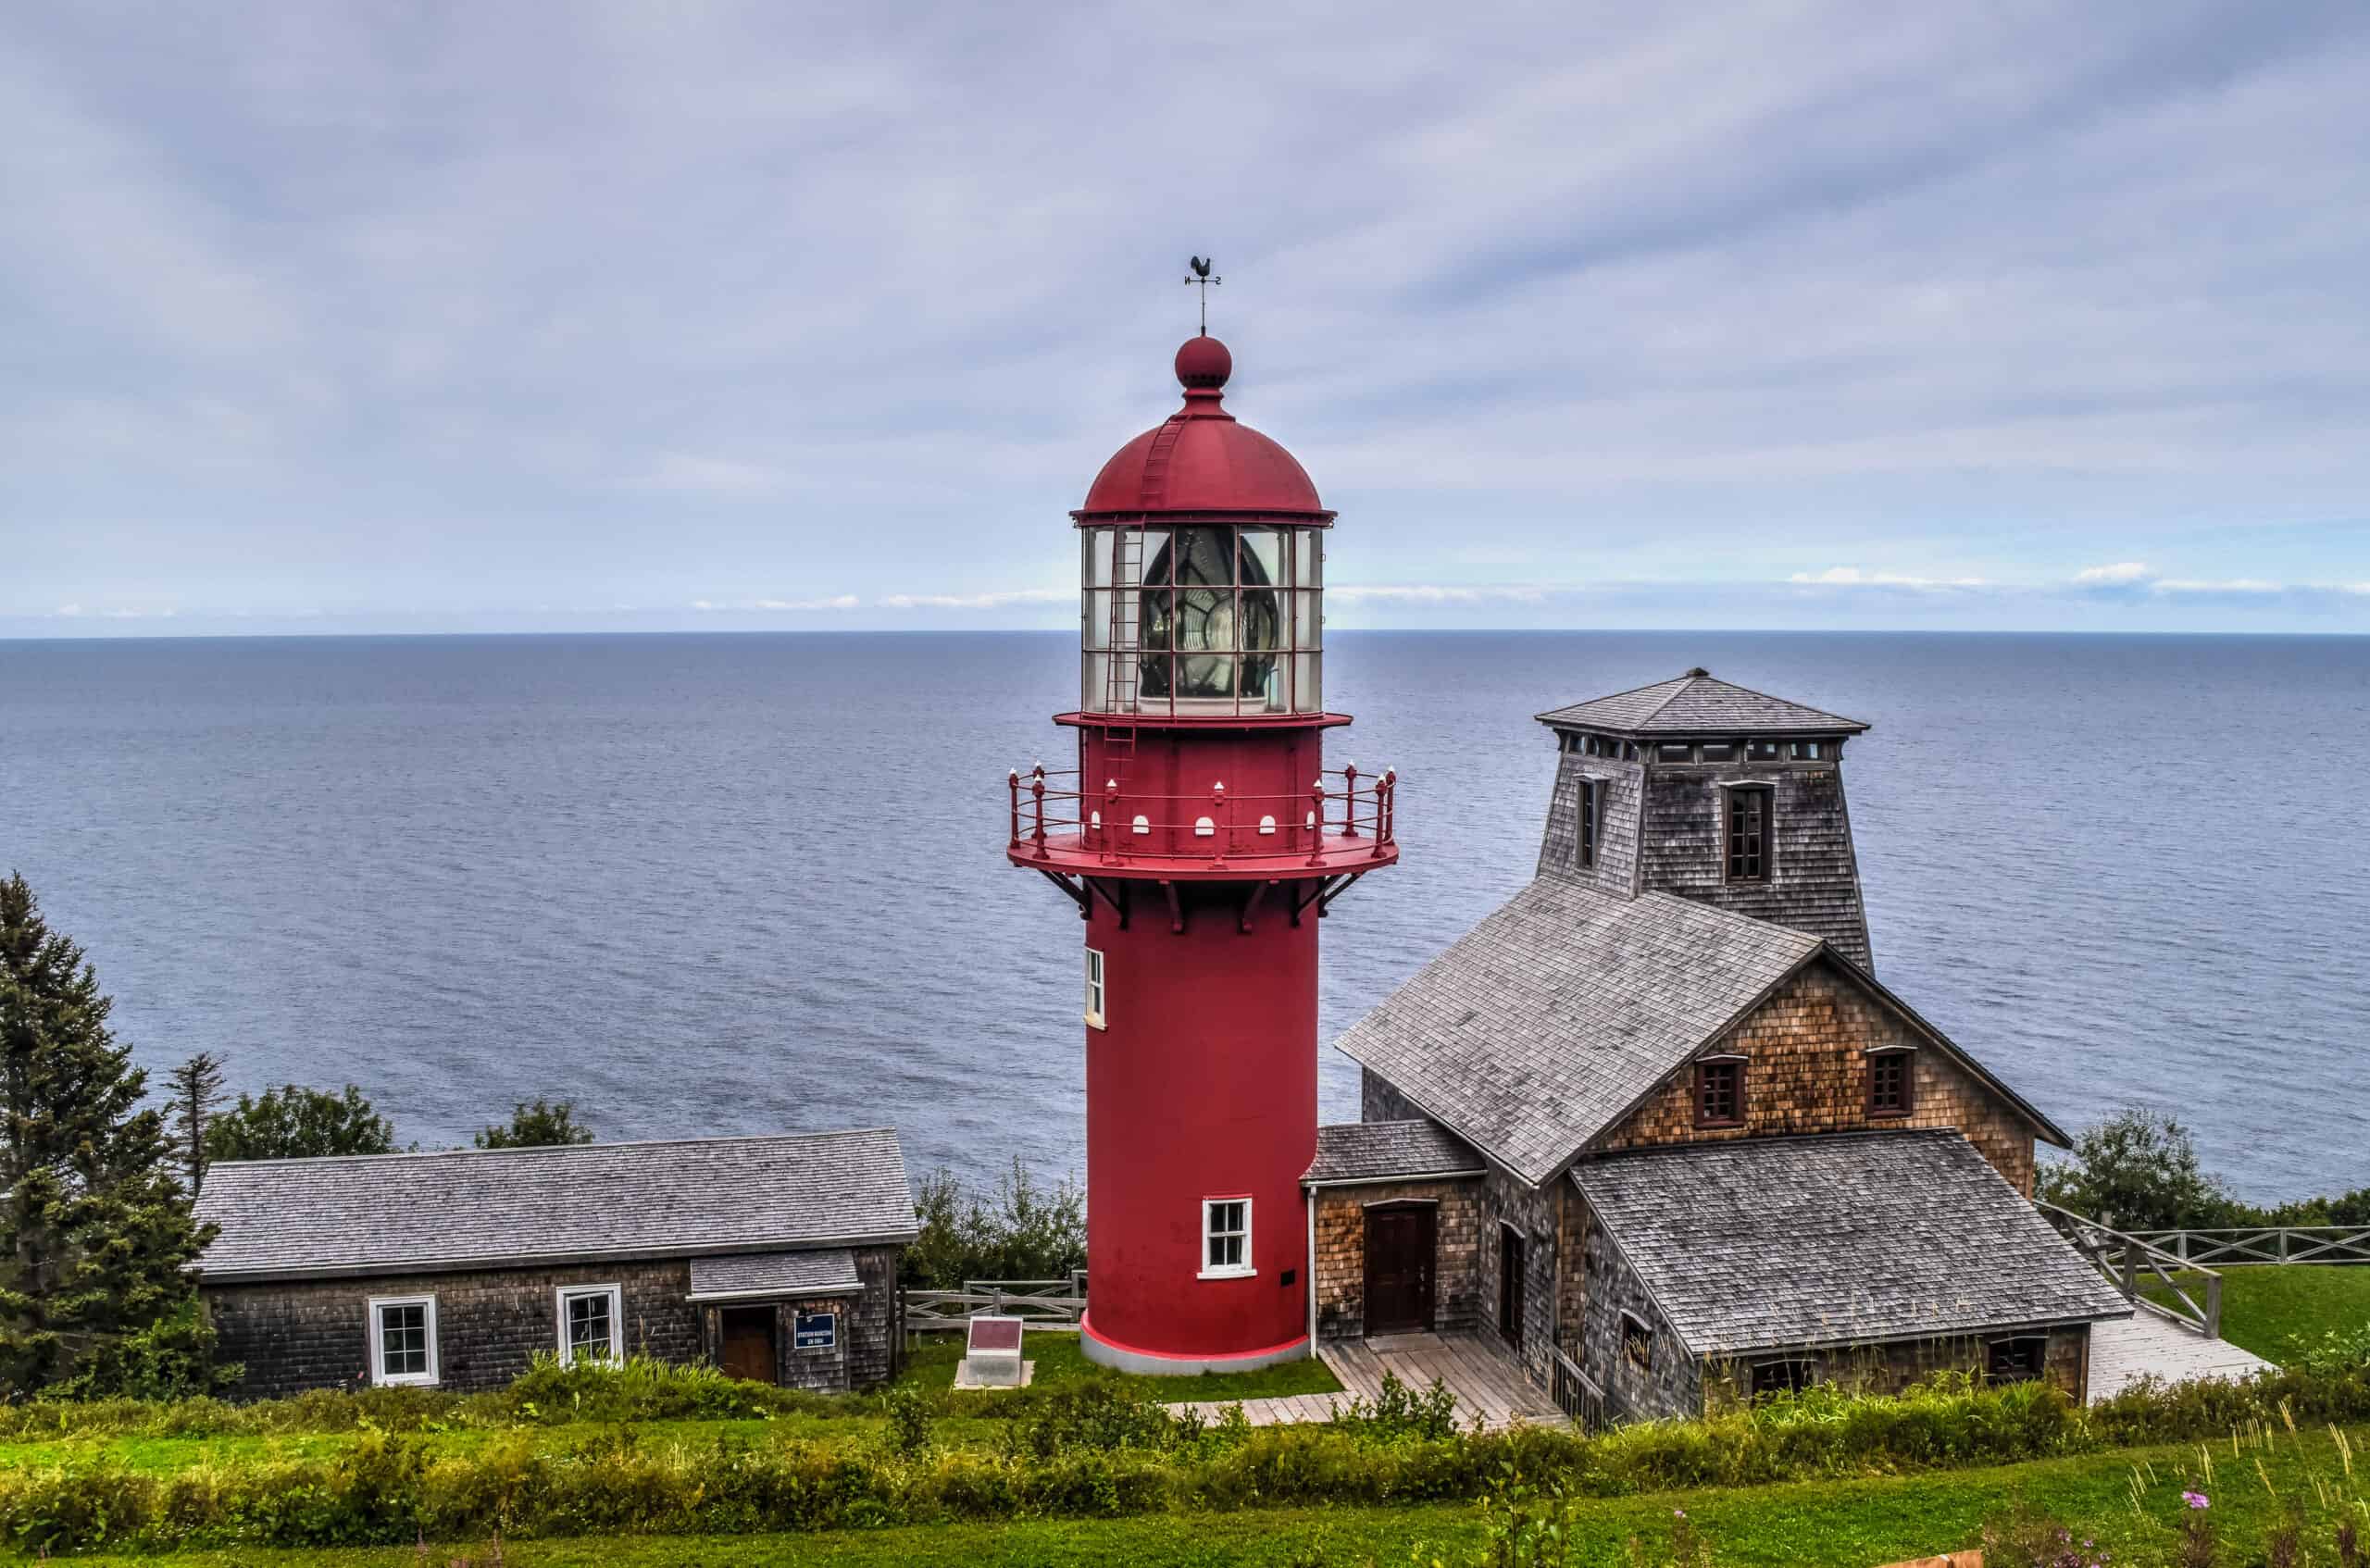 Pointe-à-la-Renommée Lighthouse in gaspésie